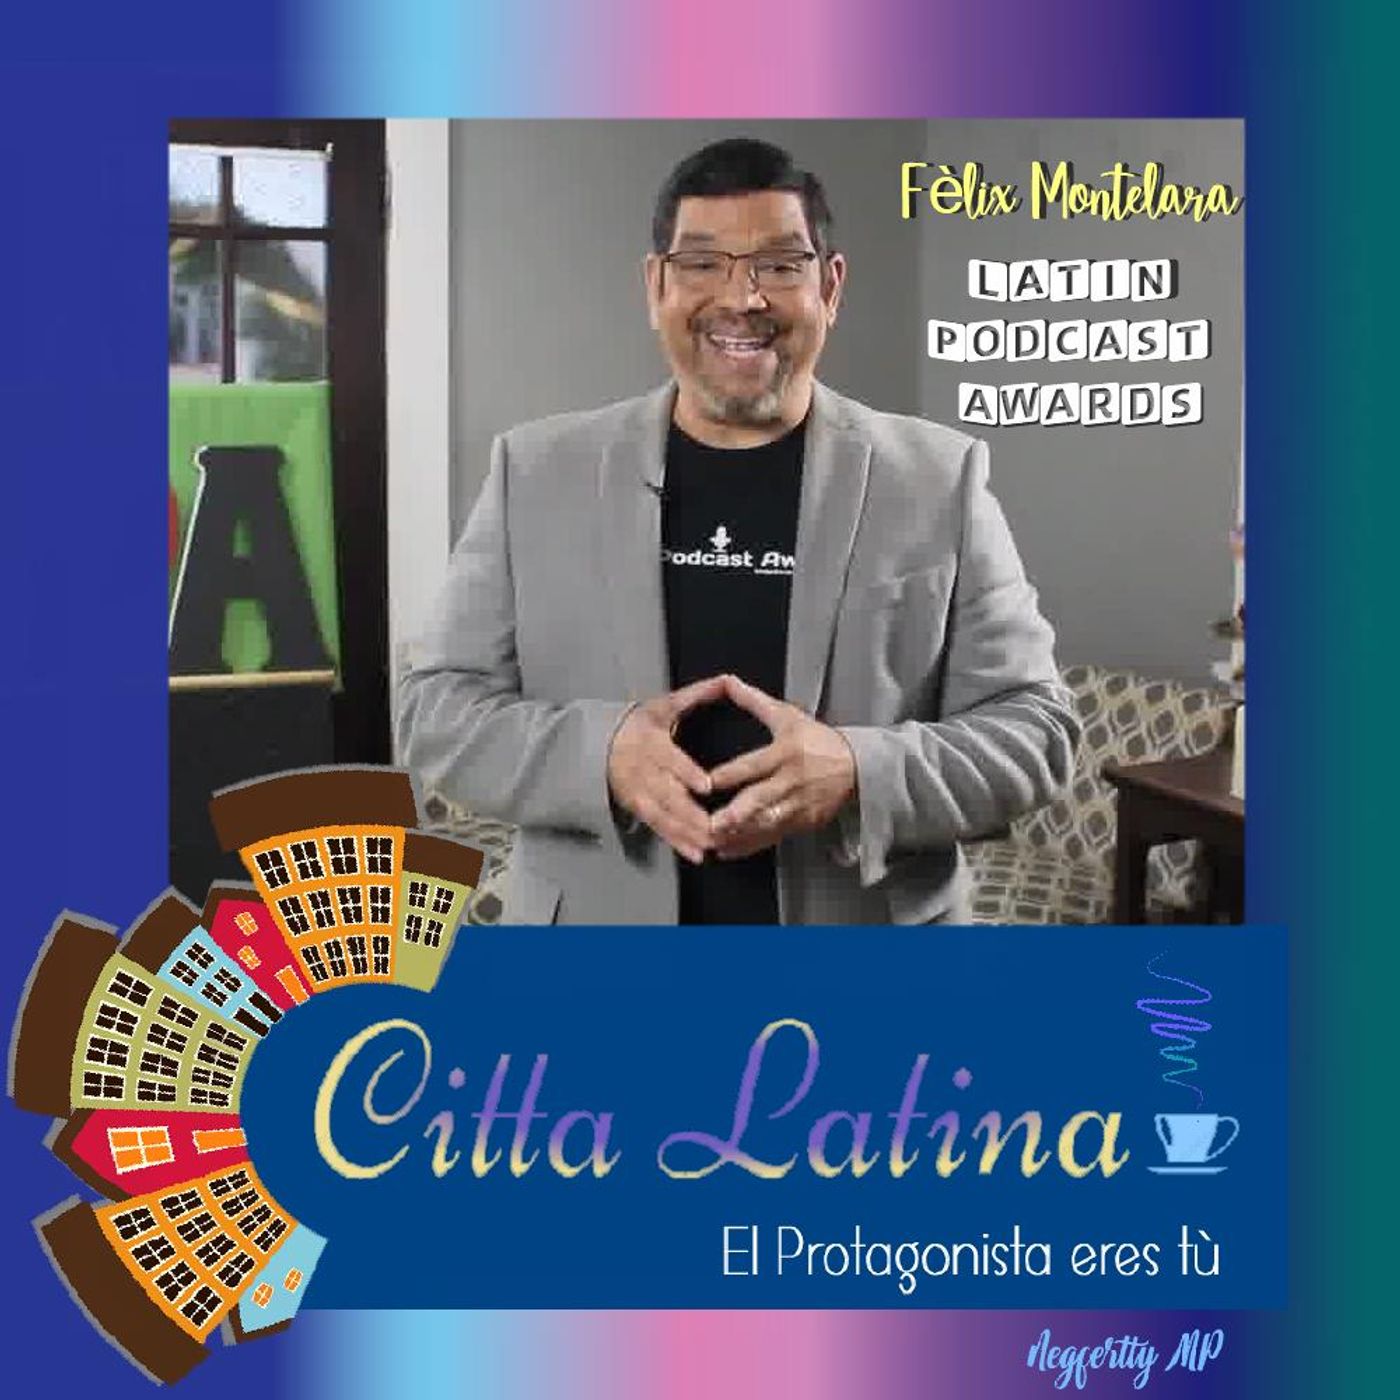 Entrevista a Felix Montelara y los Latin Podcast Awards